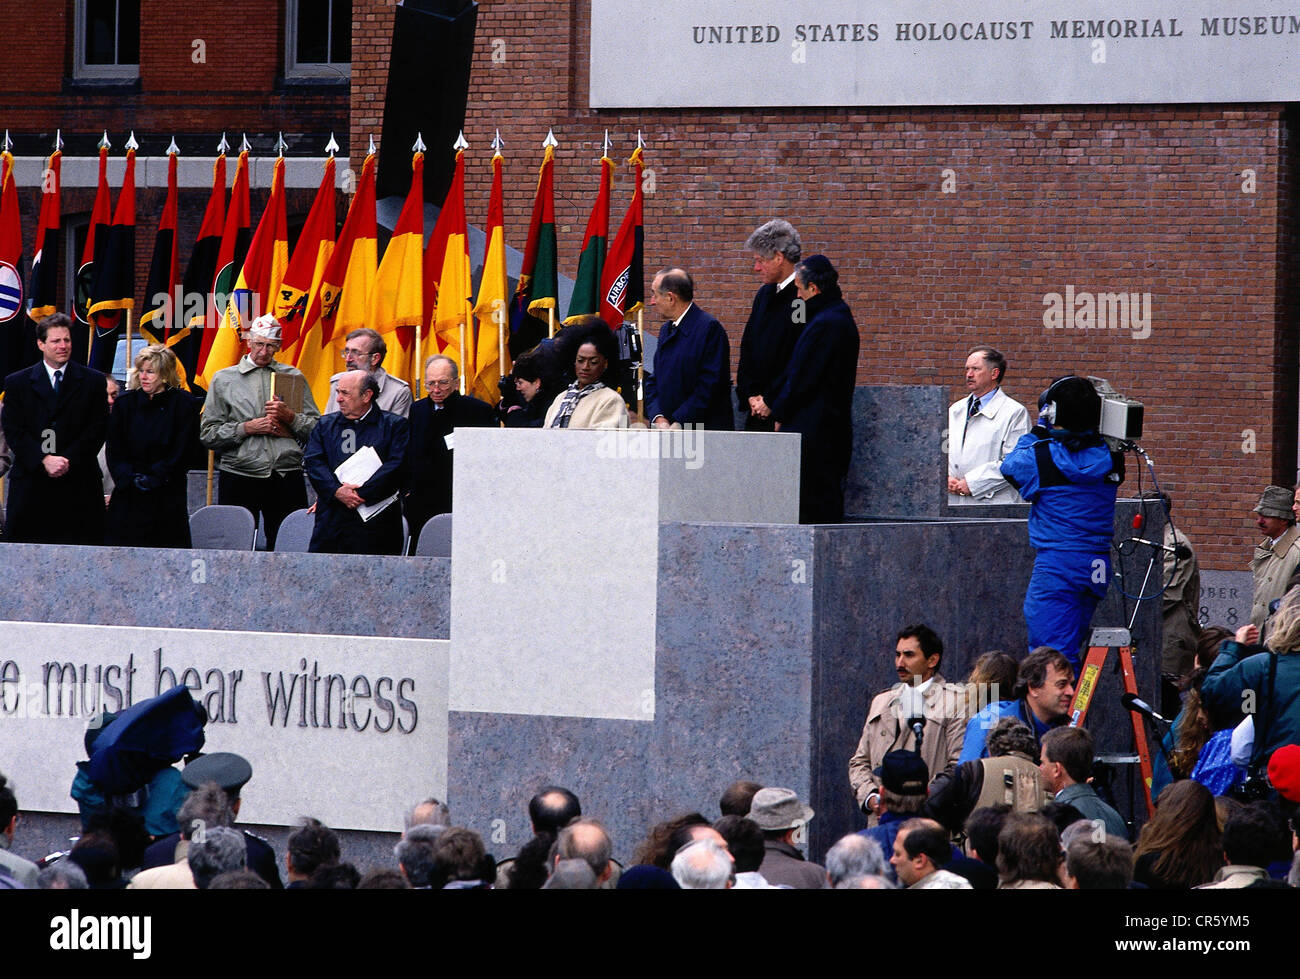 Clinton, William 'Bill', * 19.8.1946, politicien américain (Démocrates), 42ème Président des États-Unis 1993 - 2001, scène, inauguration du Musée américain de l'Holocauste, Washington D.C., 28.4.1993, Banque D'Images